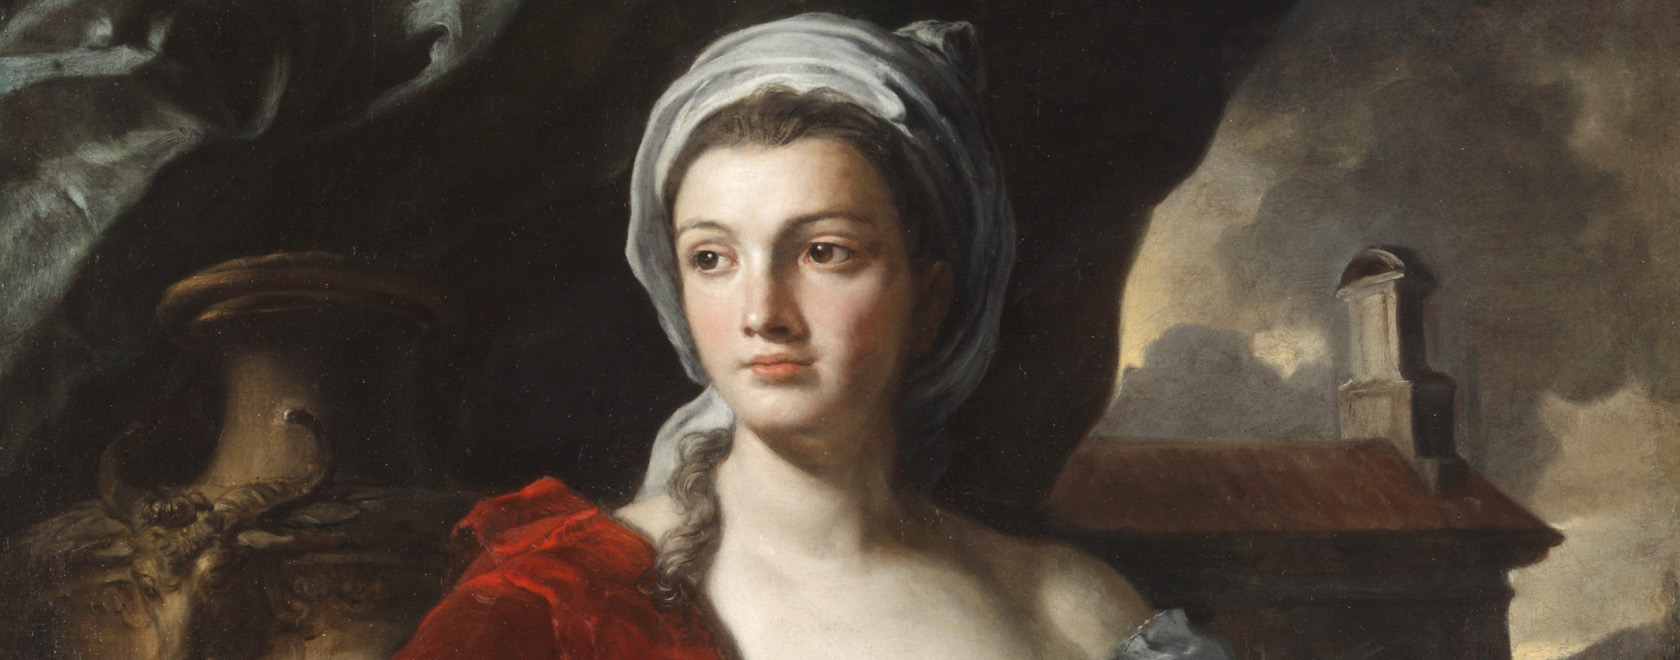 Francesco Solimena, Portrait de femme, après 1705, huile sur toile, 129 x 100 cm, Toulouse, musée des Augustins (détail), Photo © Daniel Martin